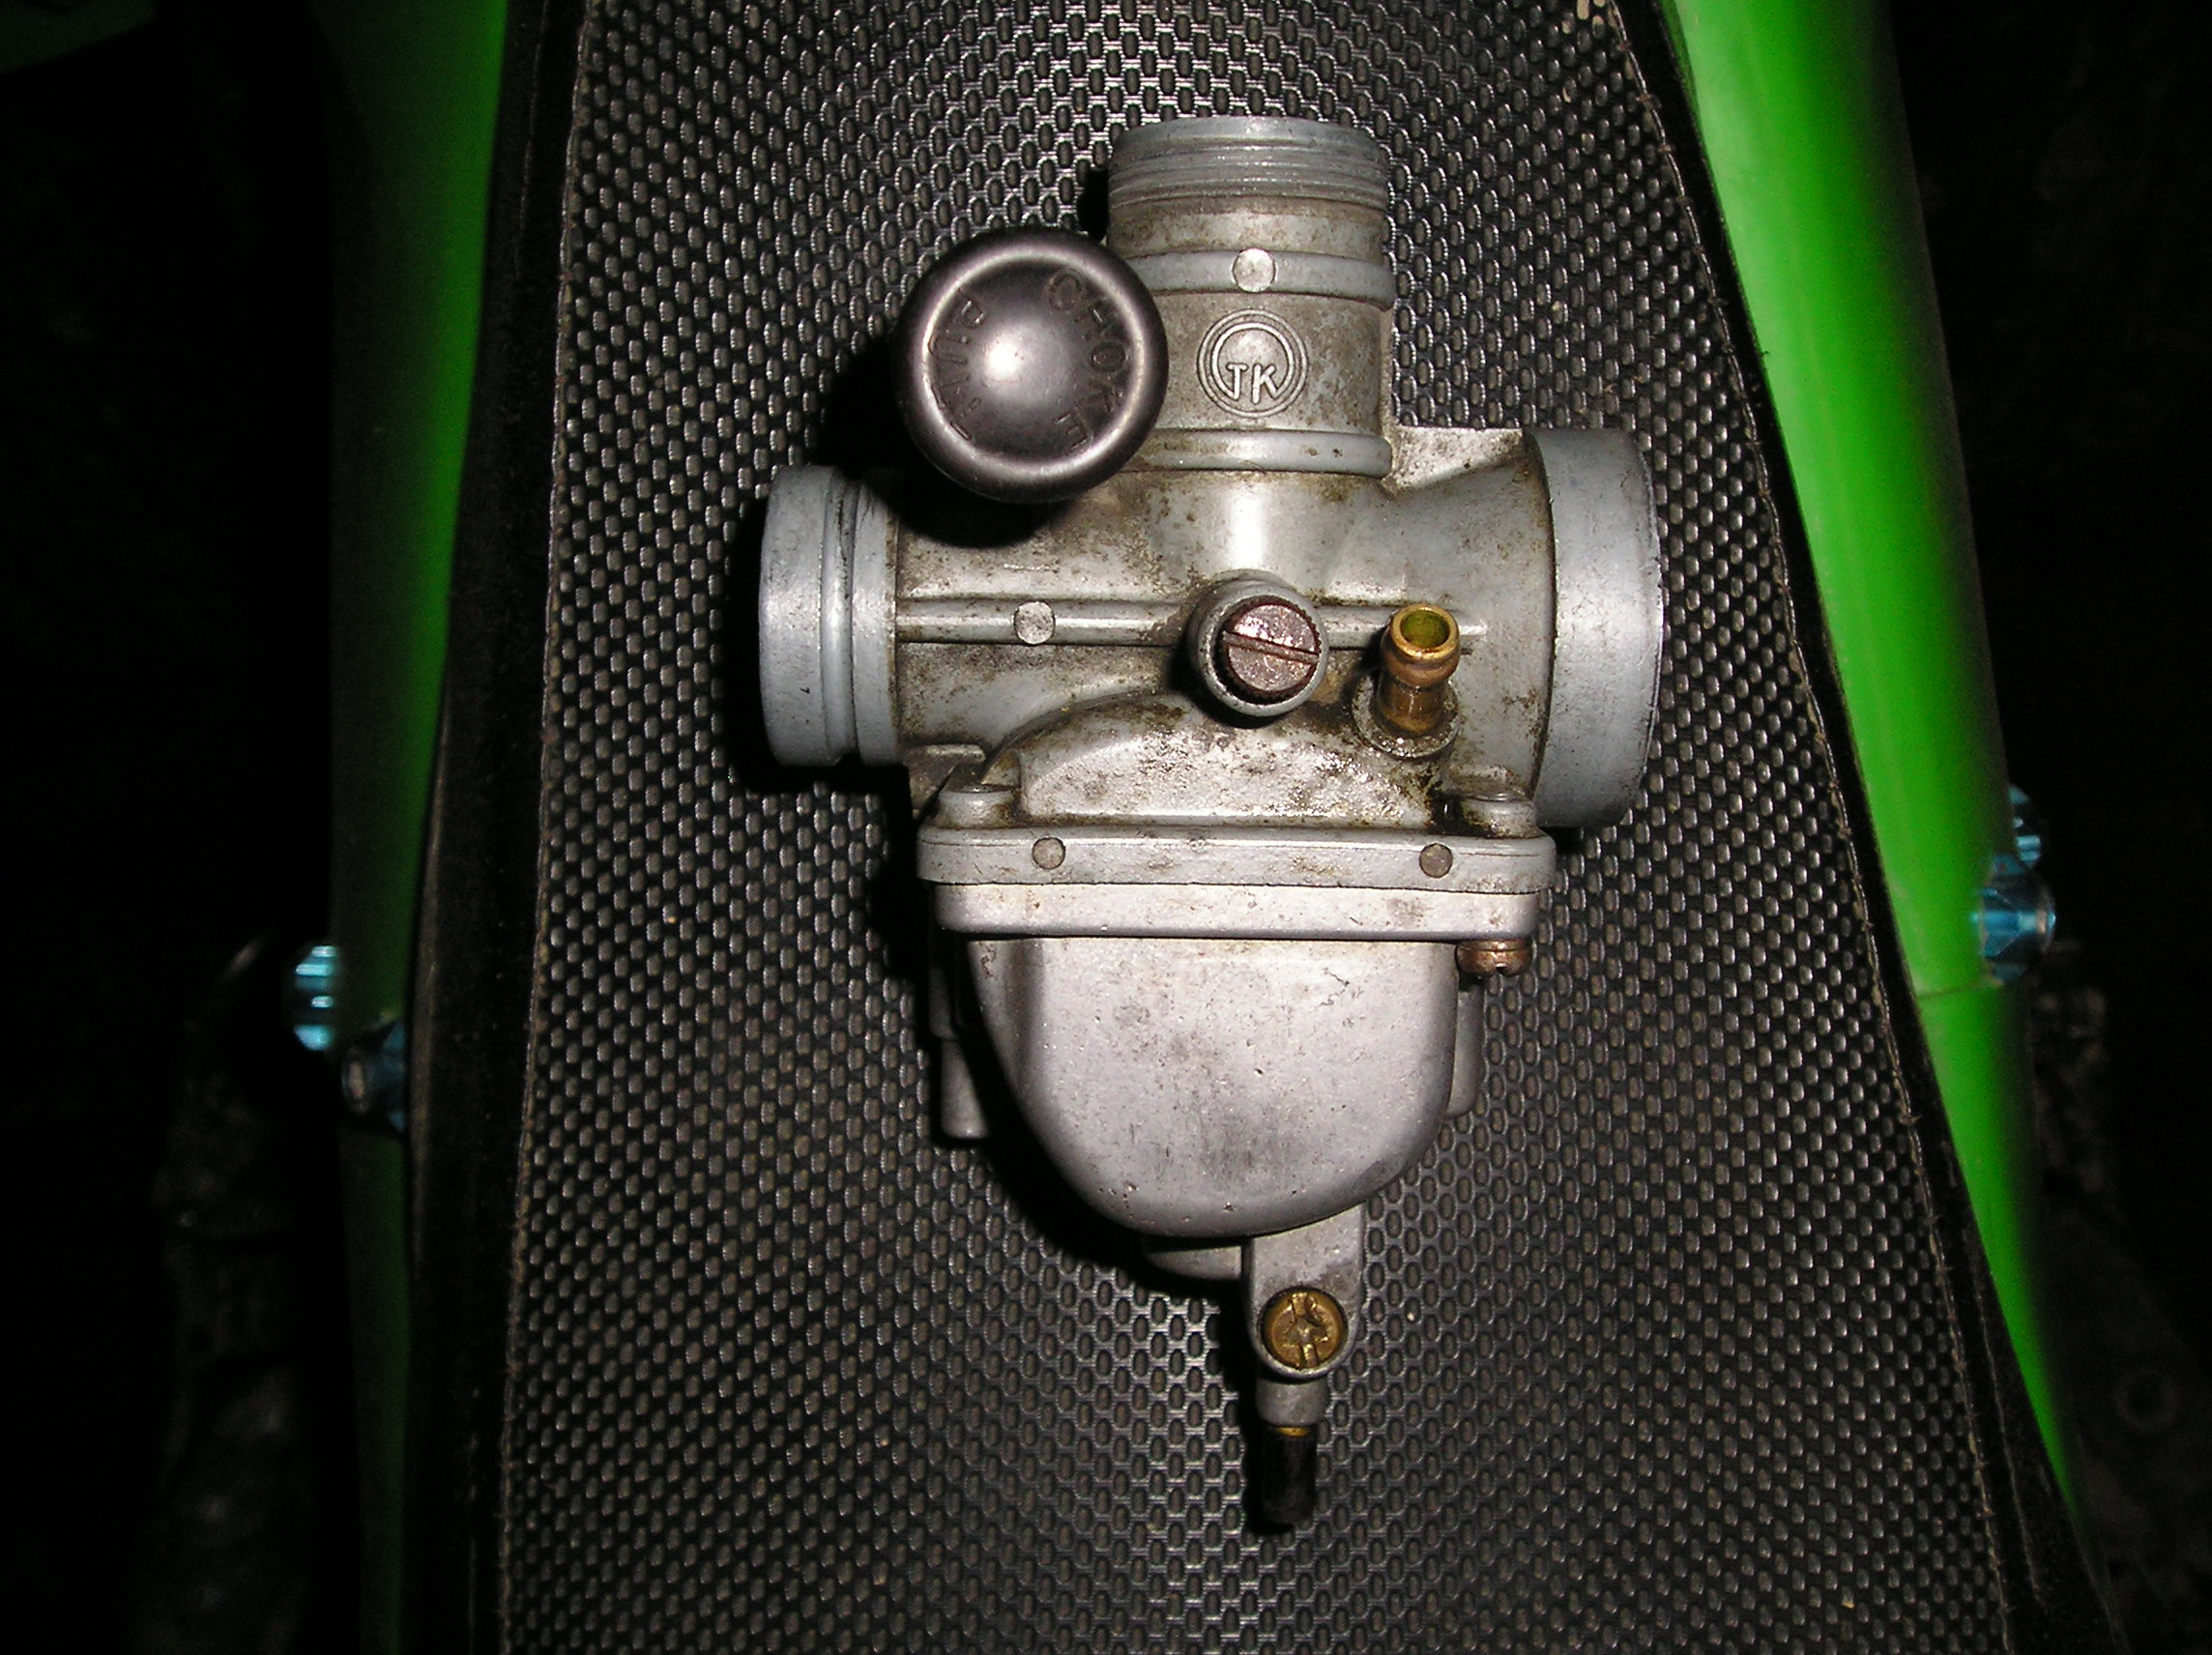 Suzuki DR 125 odpala tylko po wlaniu paliwa do cylindra